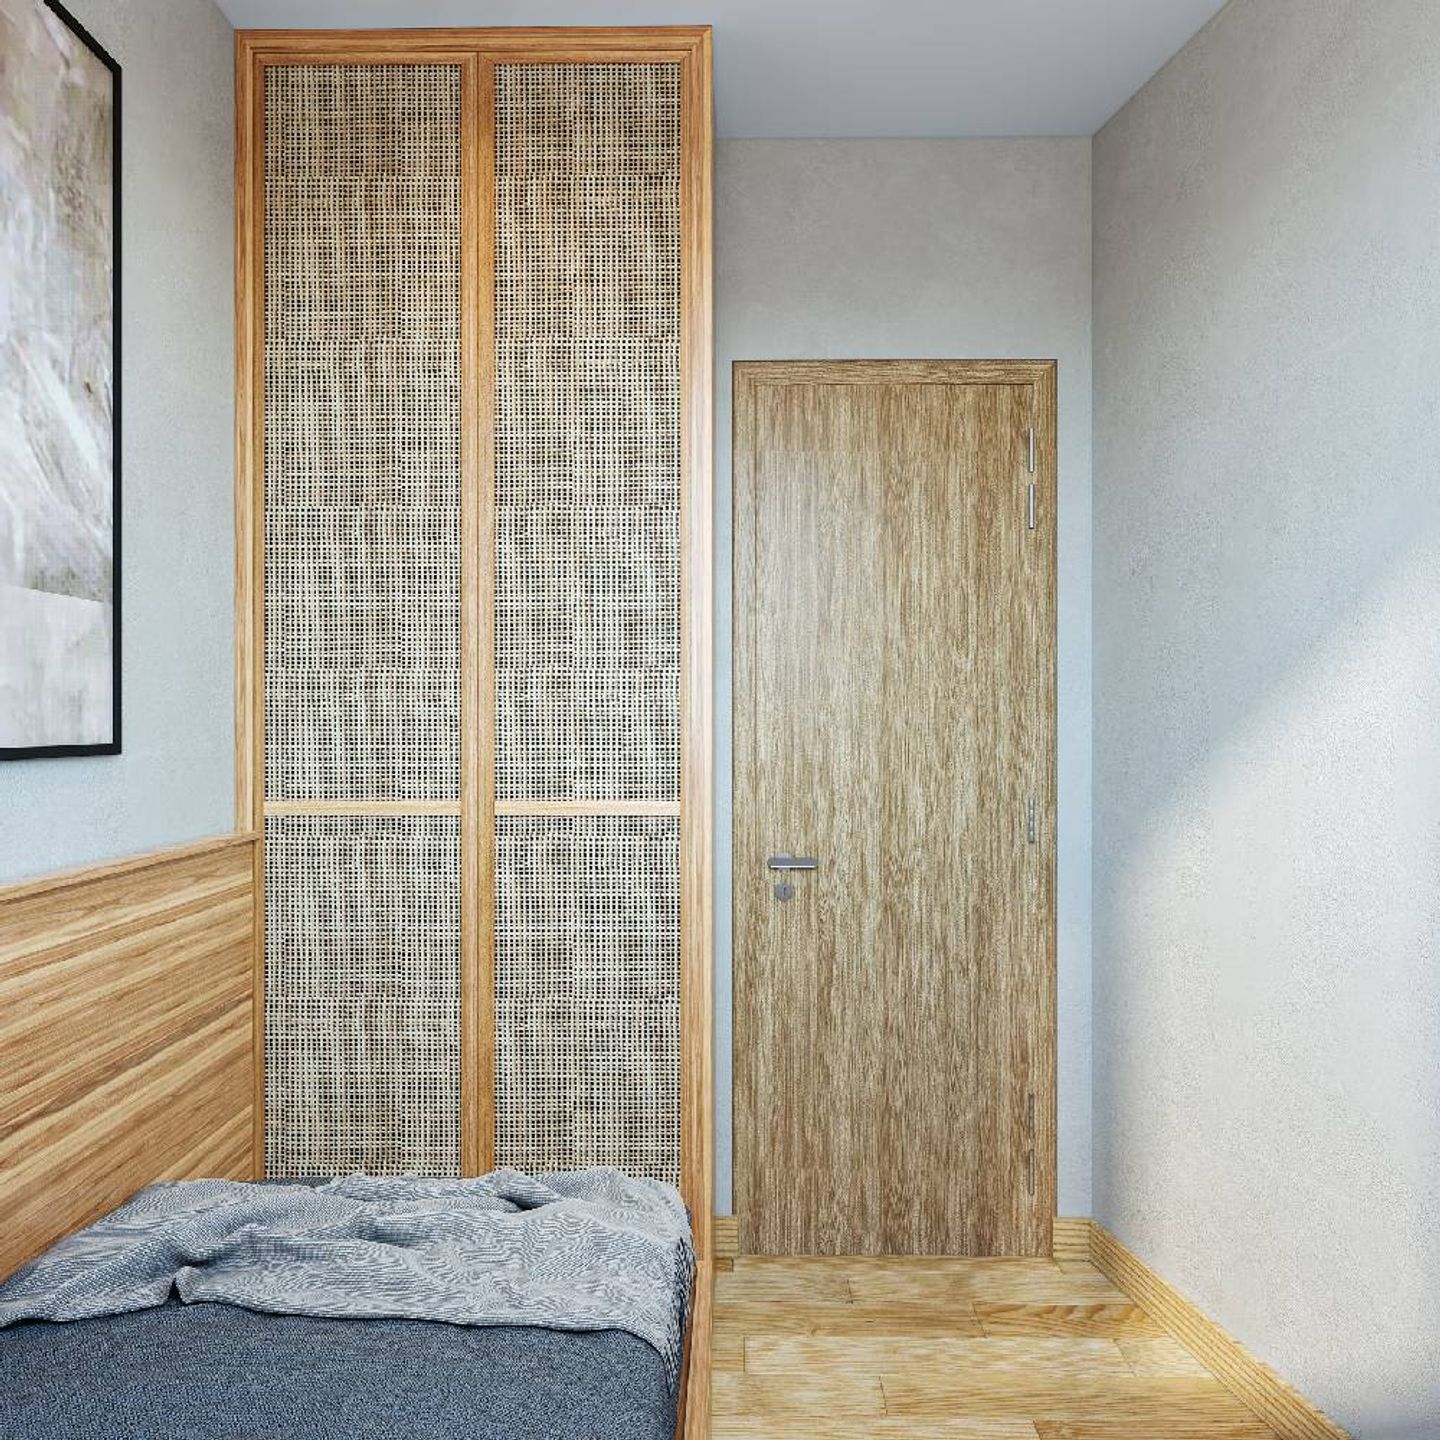 2 Door Swing Wardrobe Design With A Rustic Look - Livspace